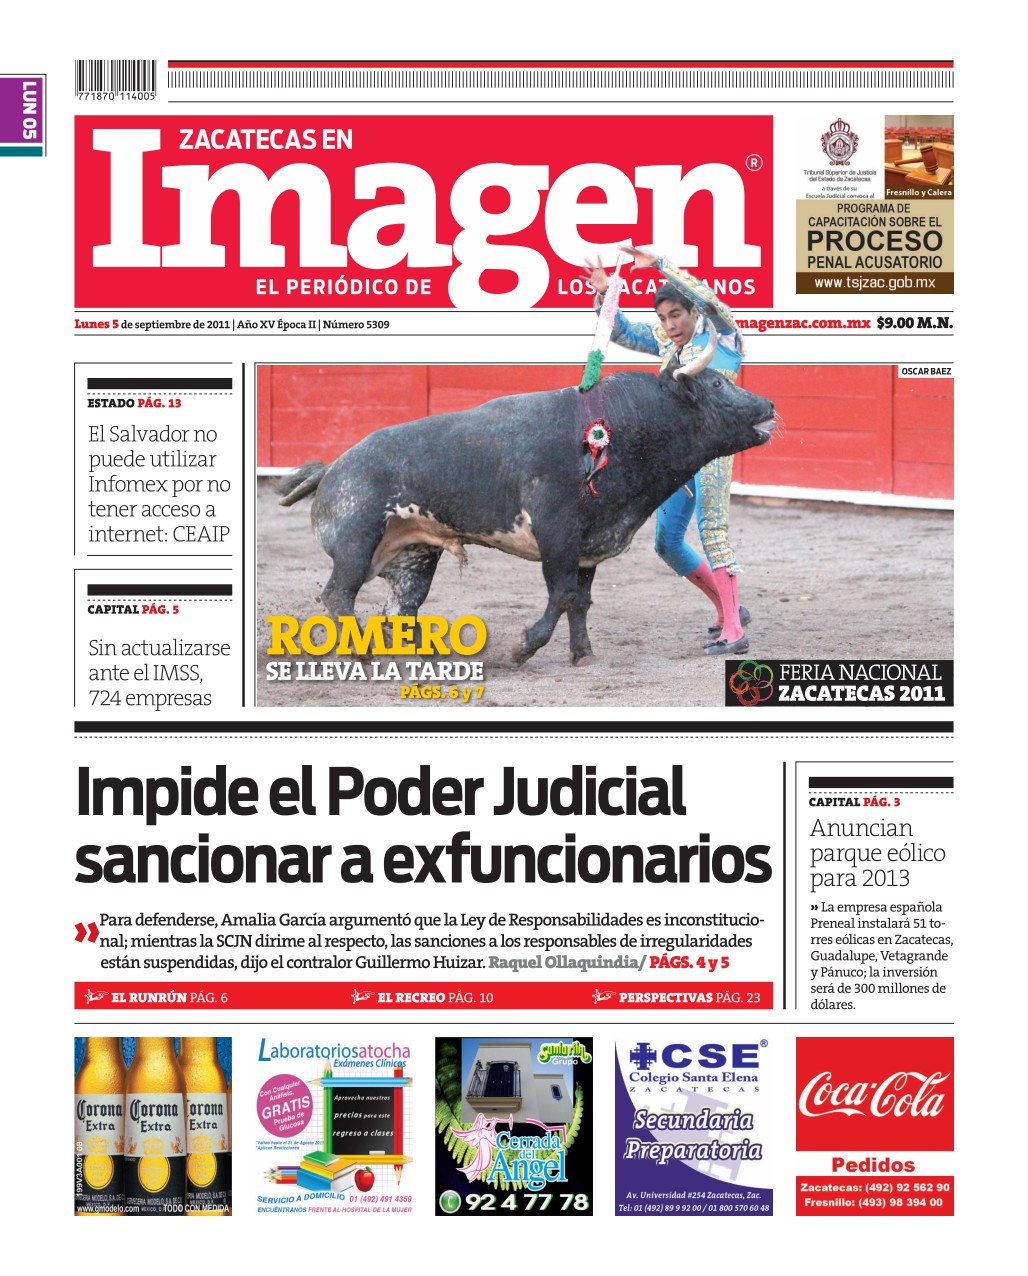 Imagen Zacatecas edición del 05 de Septiembre 2011